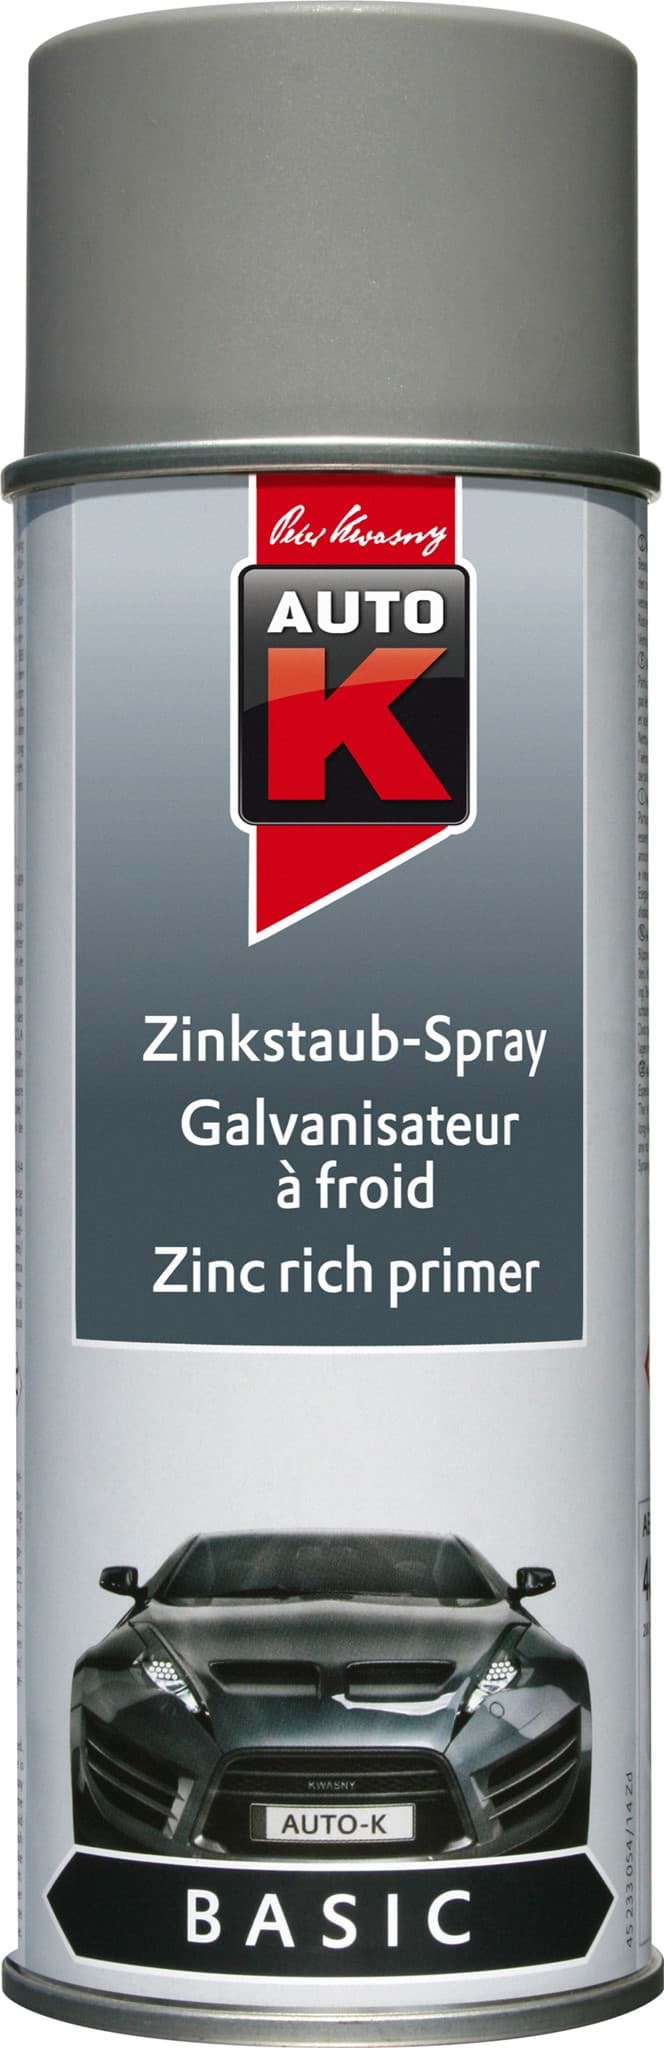 Picture of Zinkstaub Spray Zinkspray 400ml AutoK